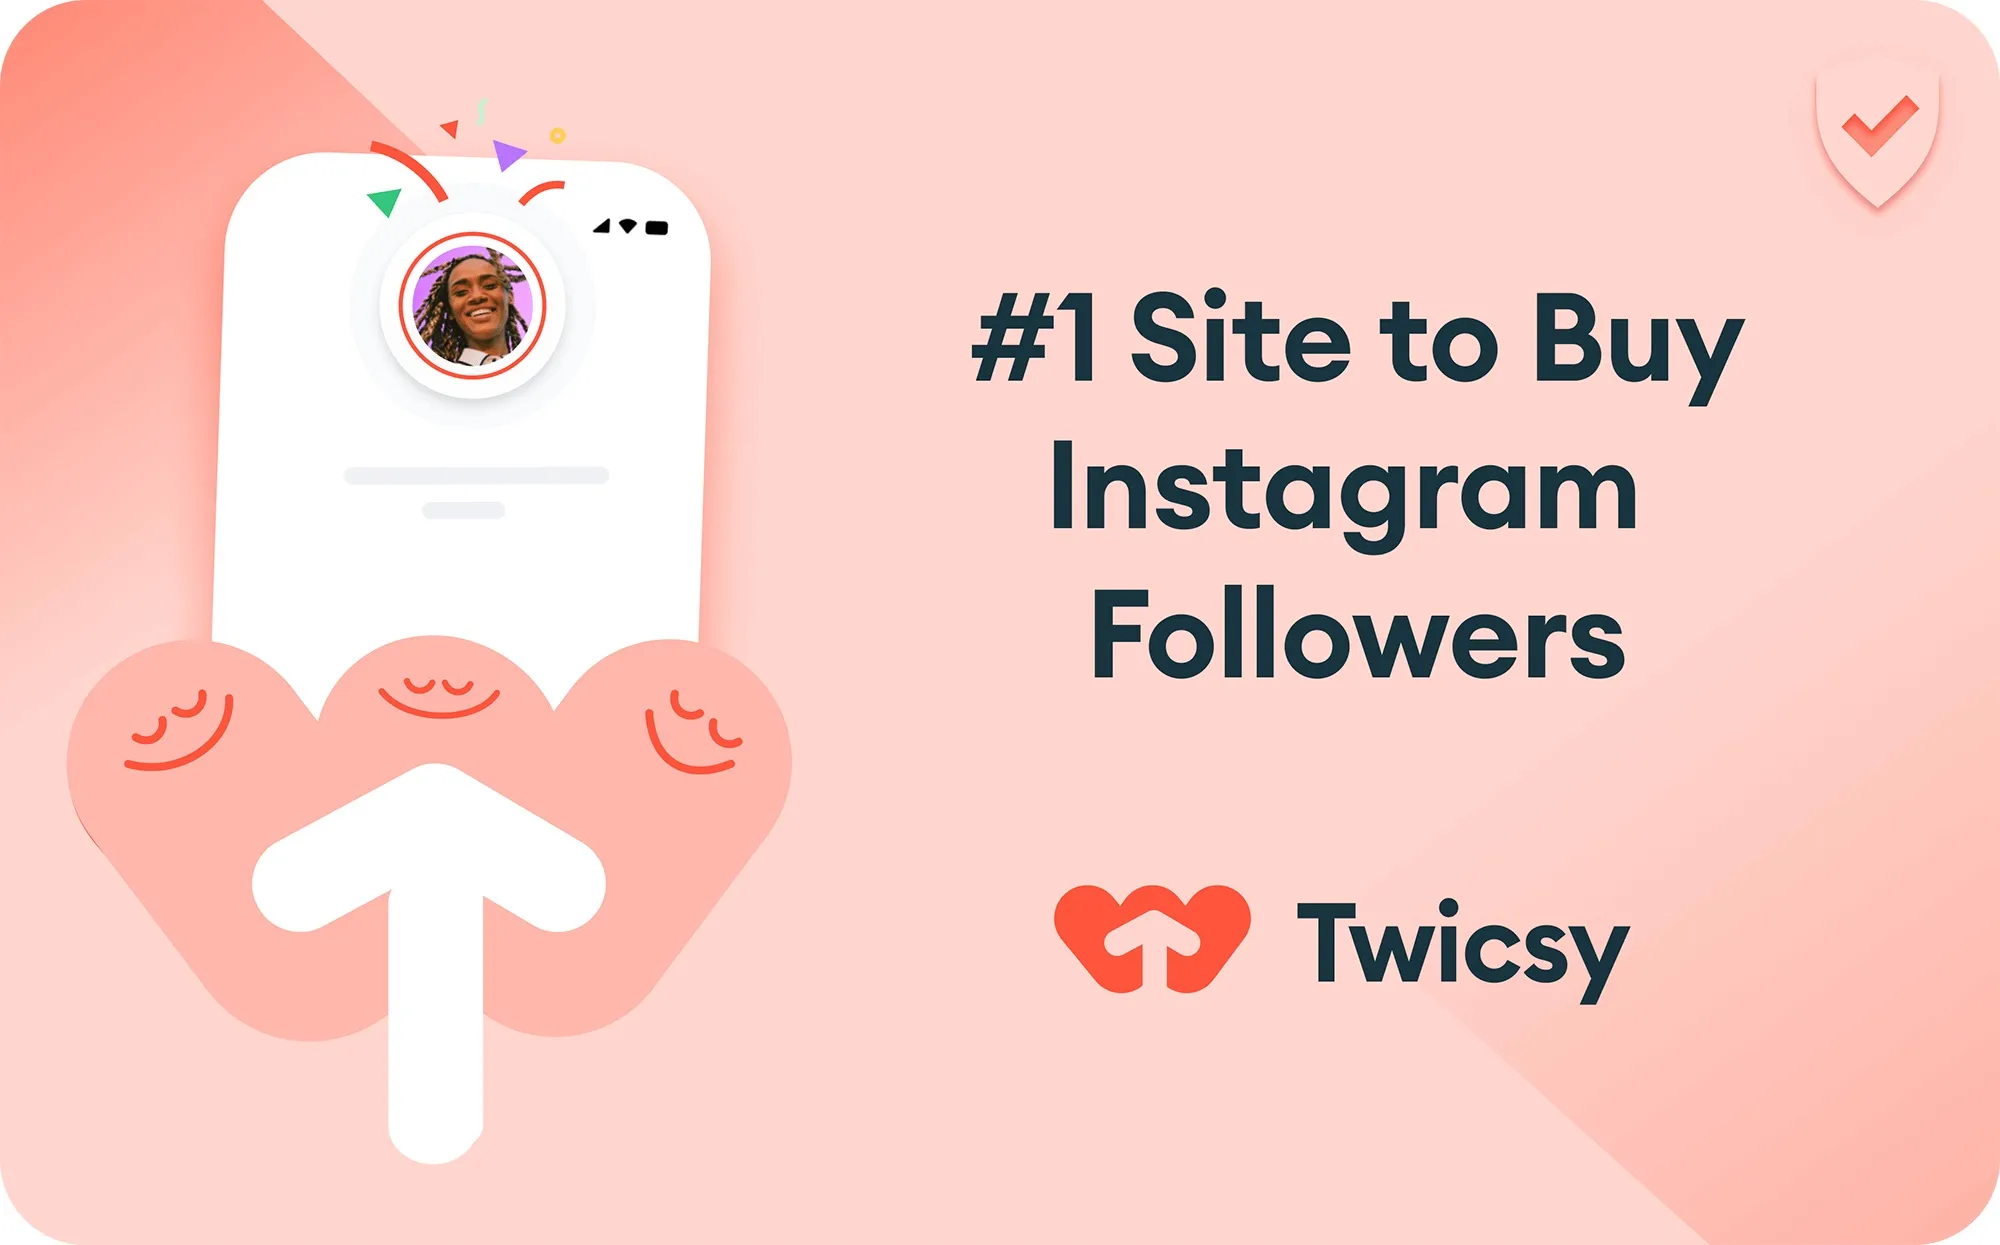 Twicsy : Site to Buy Instagram followers